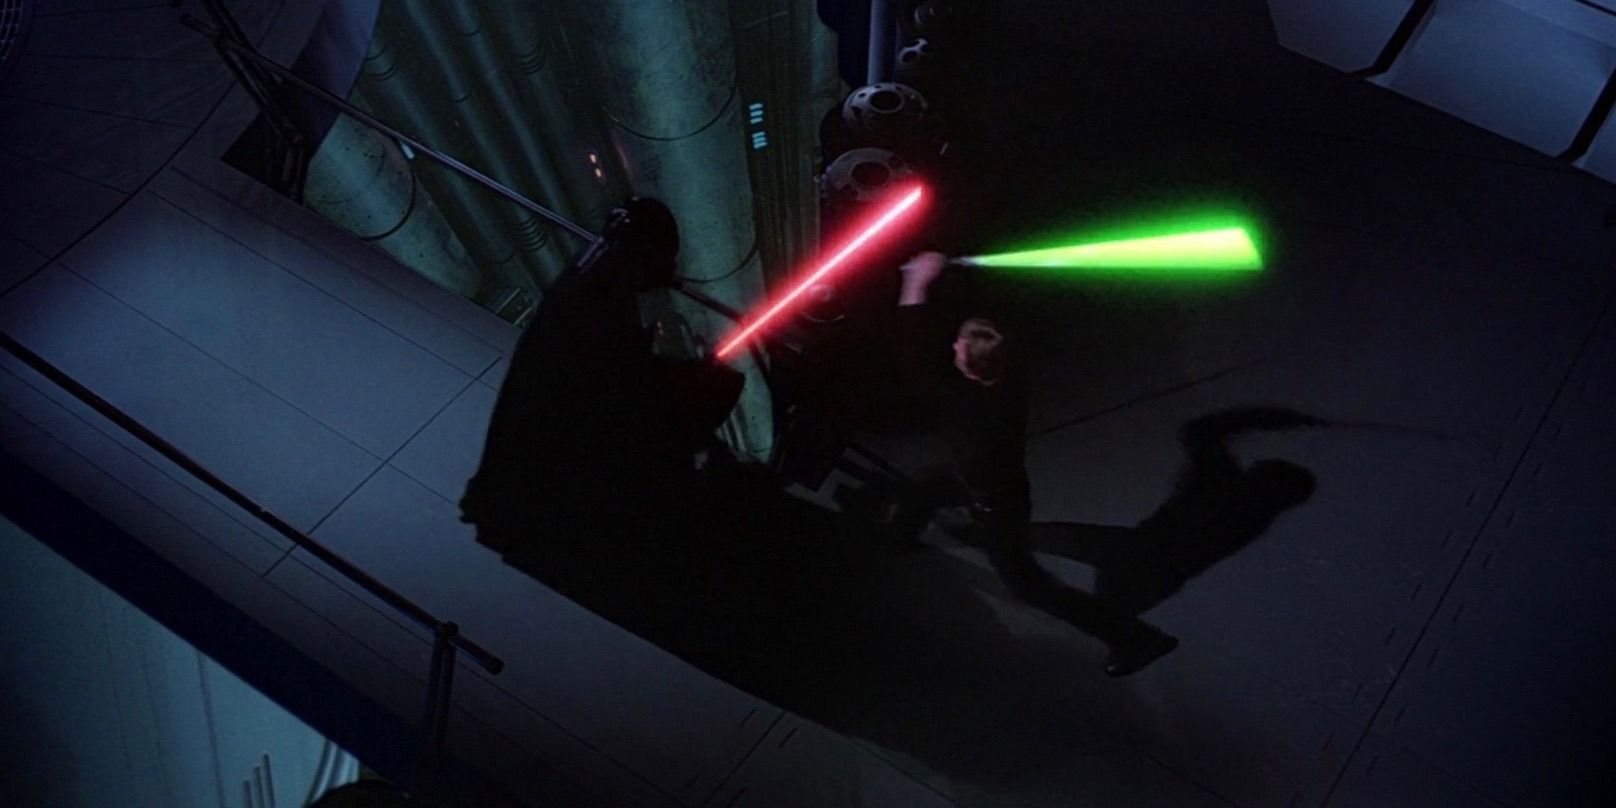 Darth Vader and Luke Skywalker Duel in Star Wars Episode VI Return of the Jedi